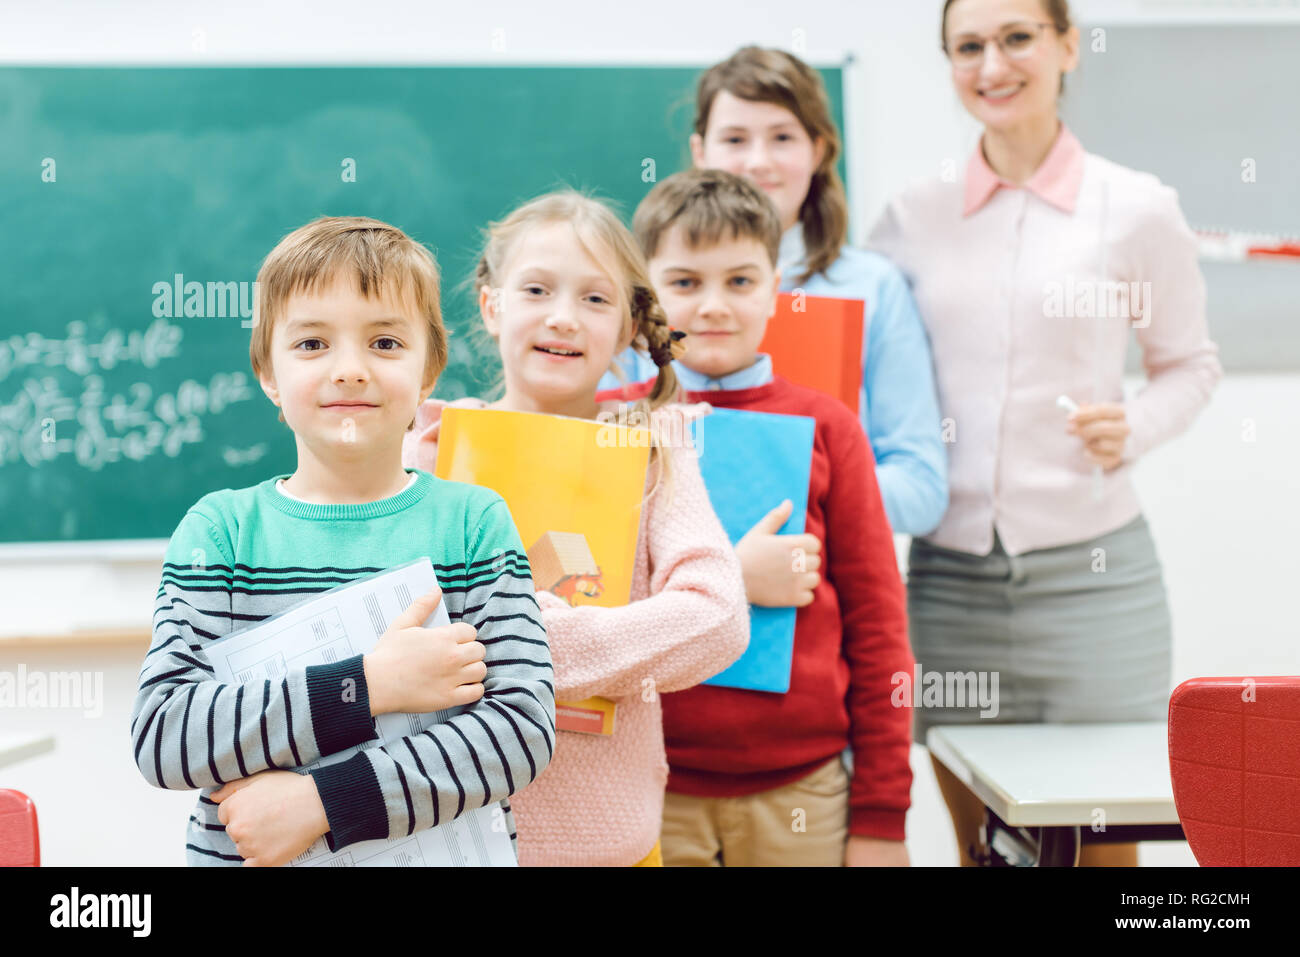 Studenten mit Bücher und Lehrer stehen in der Schule Klasse Stockfoto